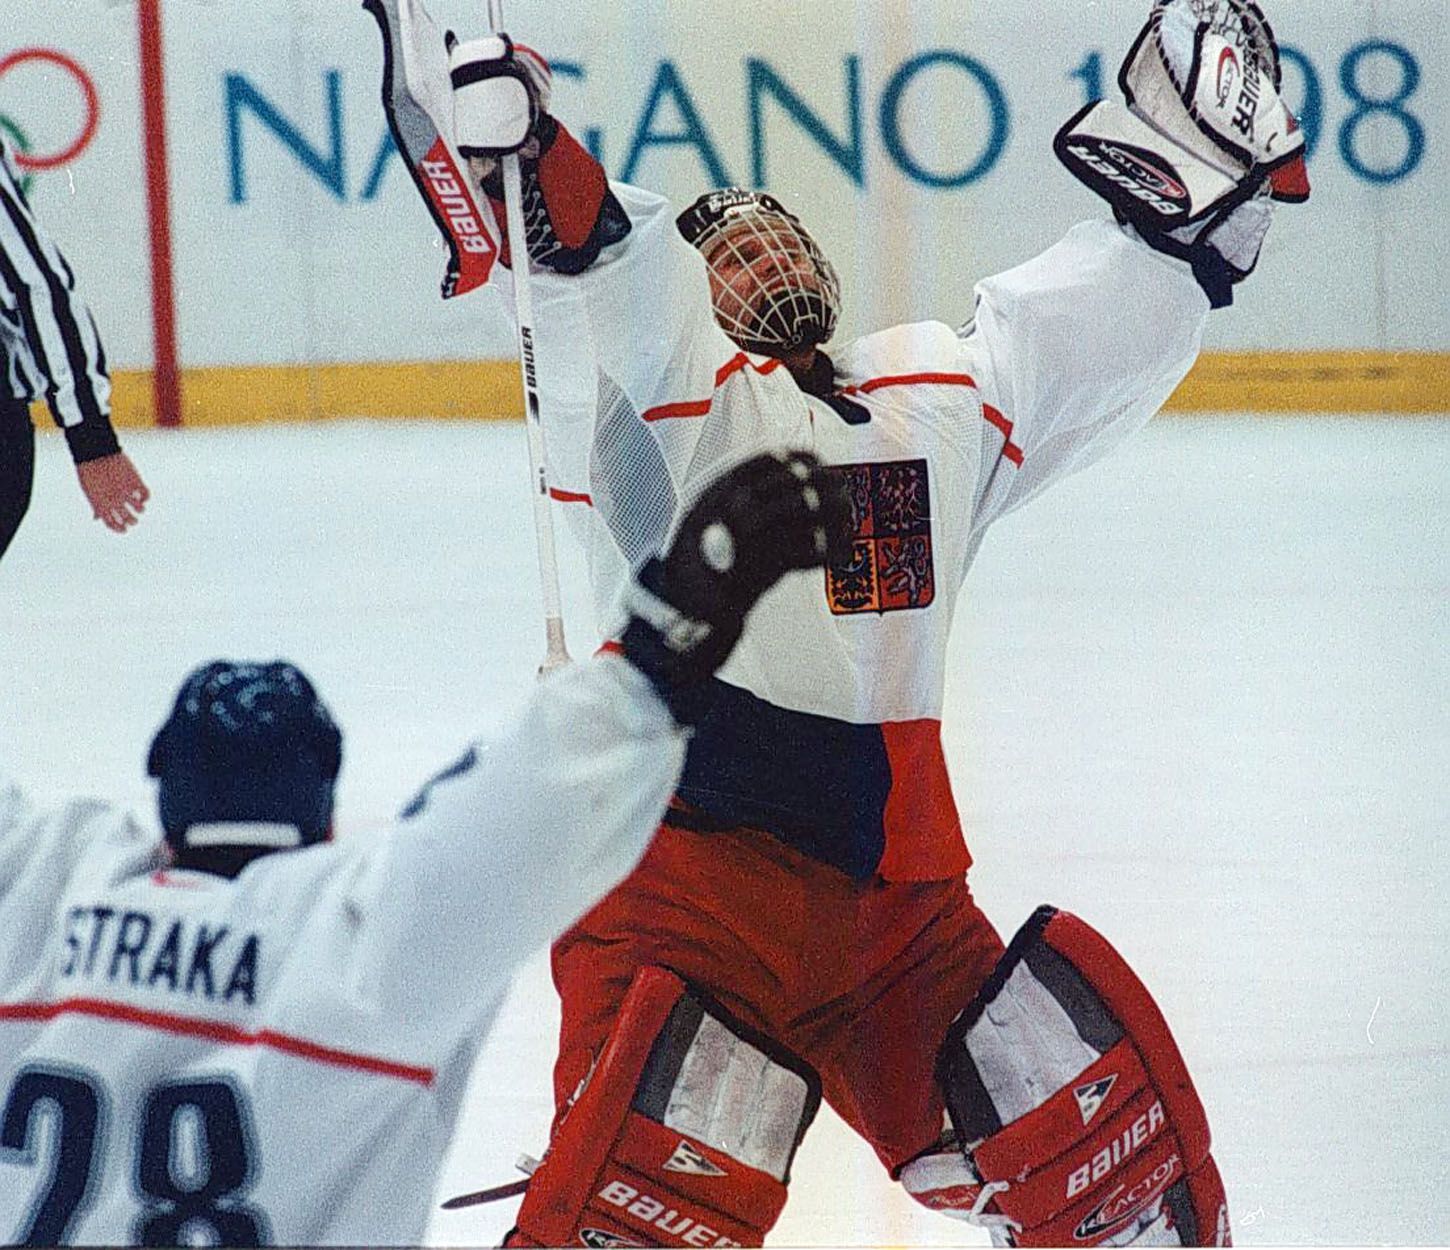 Archivní snímky z ZOH Nagano 1998 - hokej